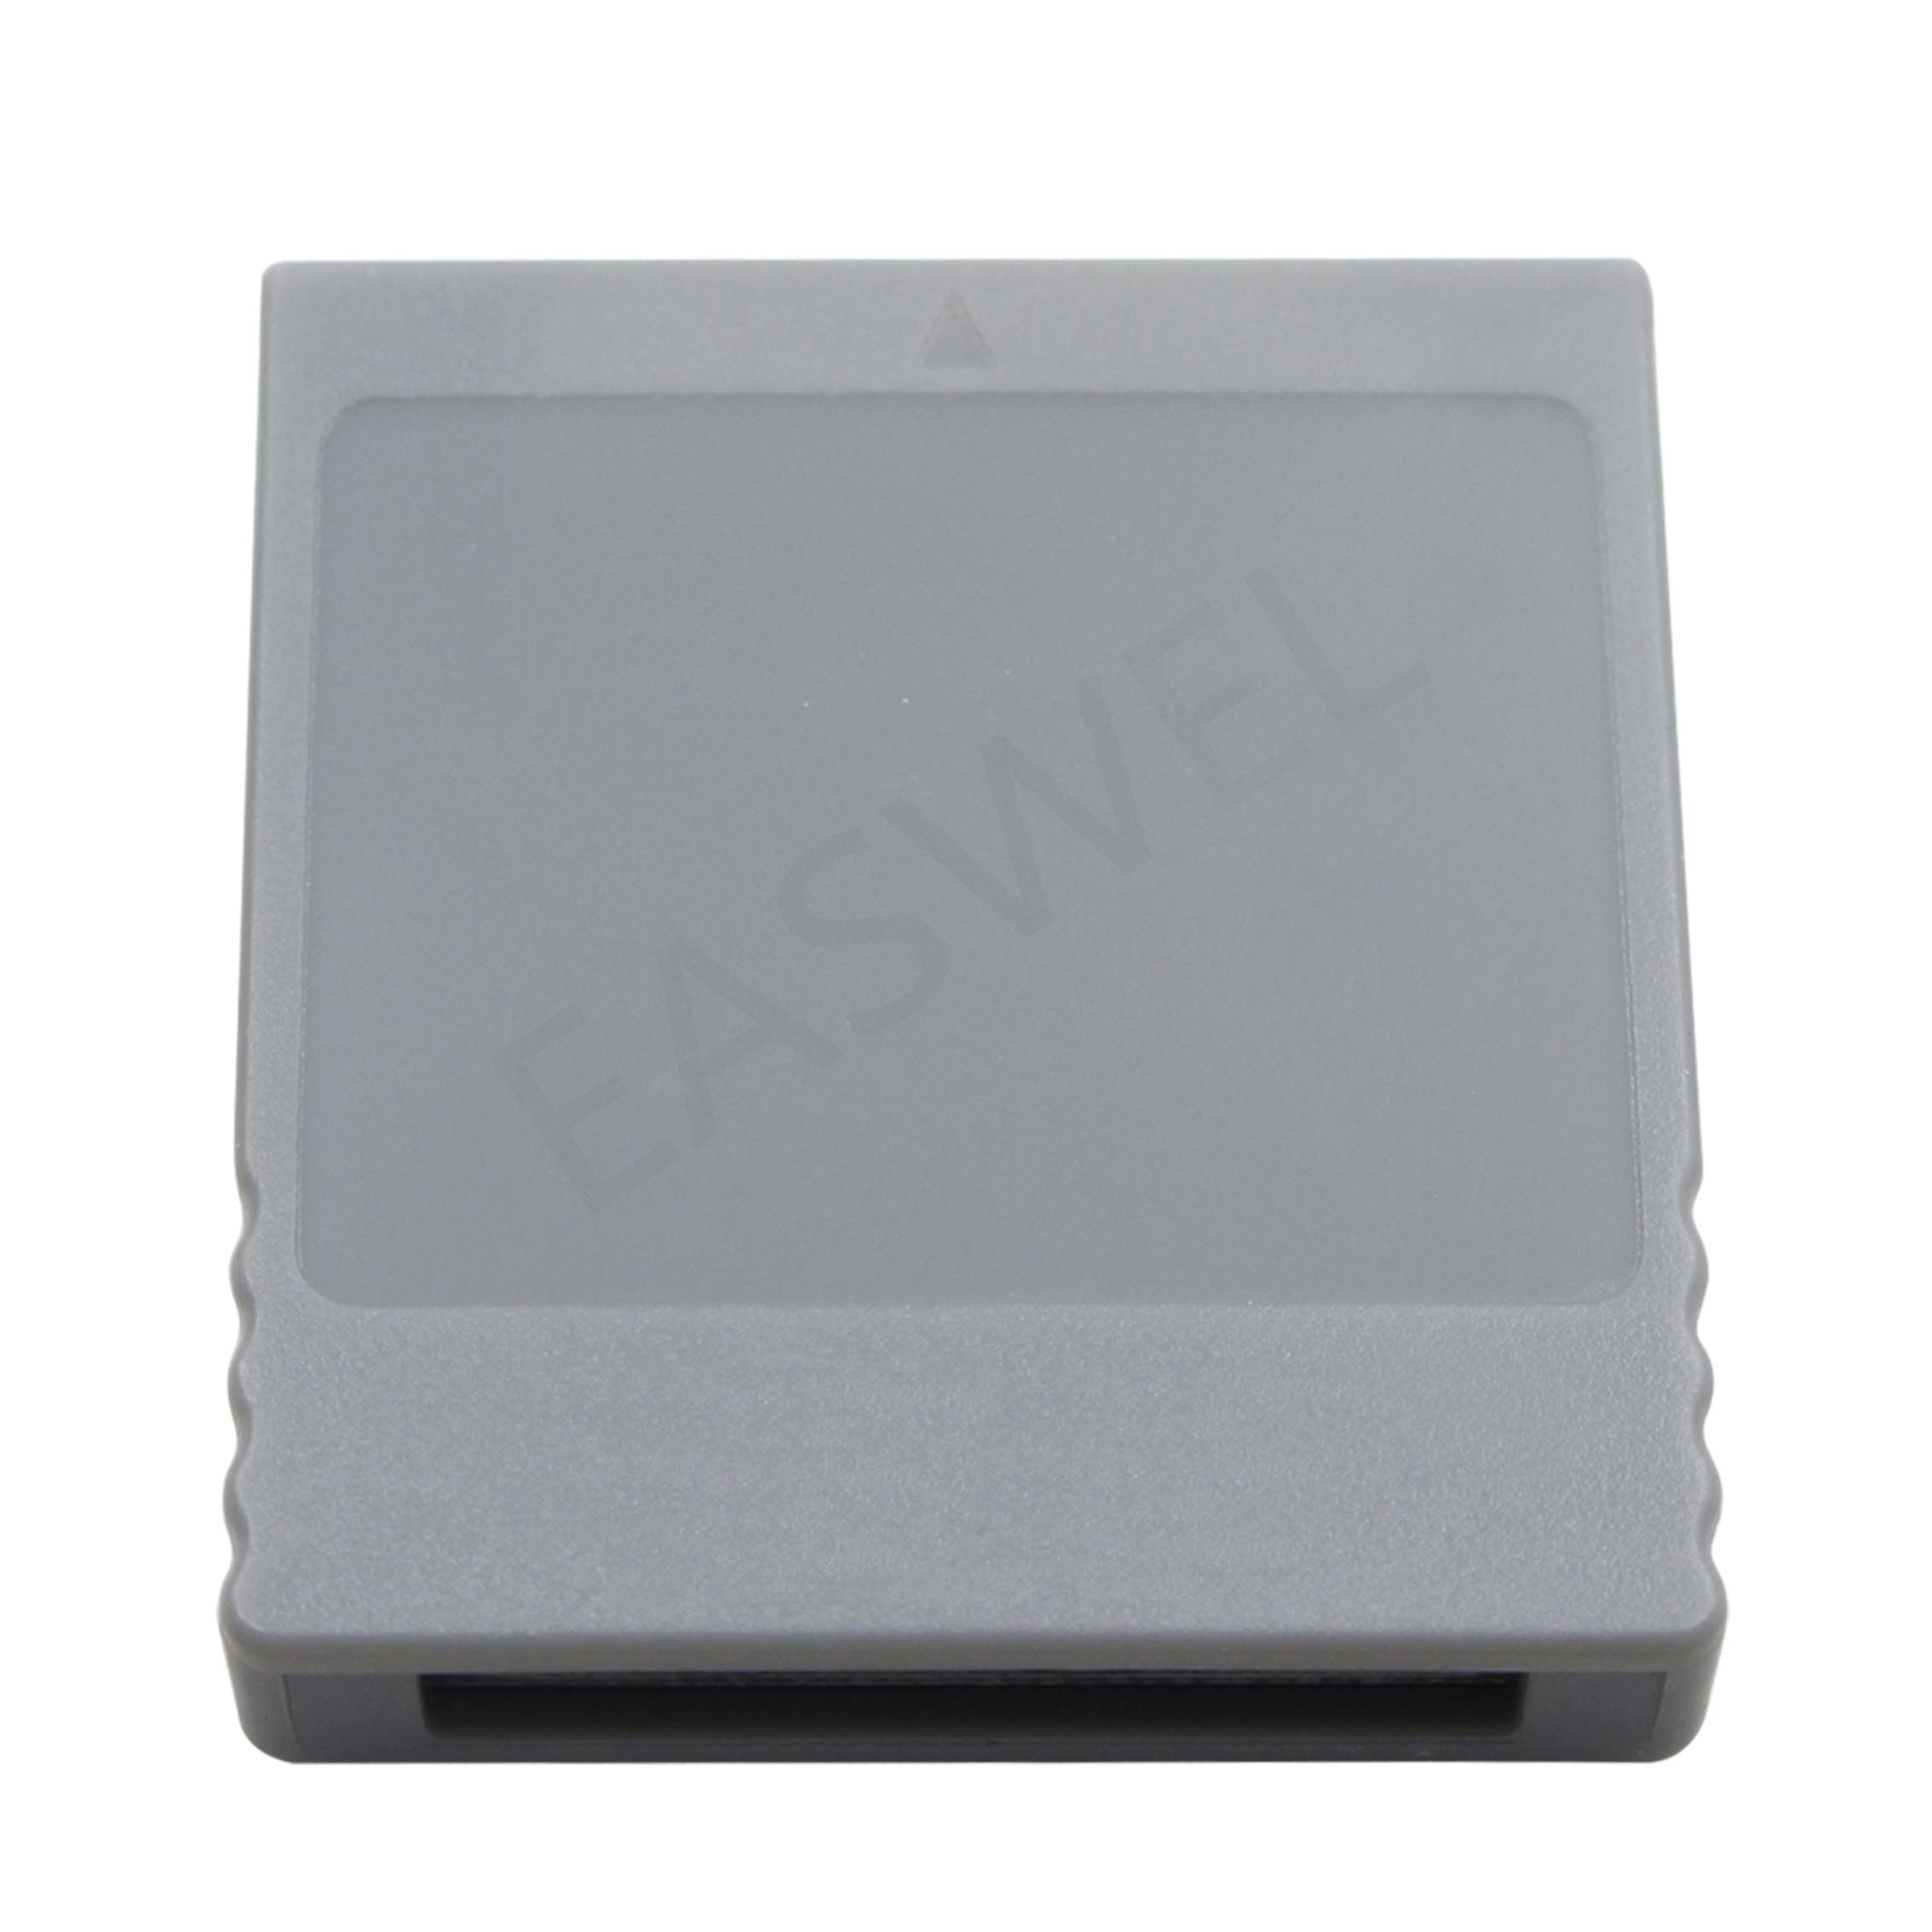 Sd Geheugenkaart Stick Kaartlezer Adapter Converter Voor Nintendo Wii Gamecube Ngc